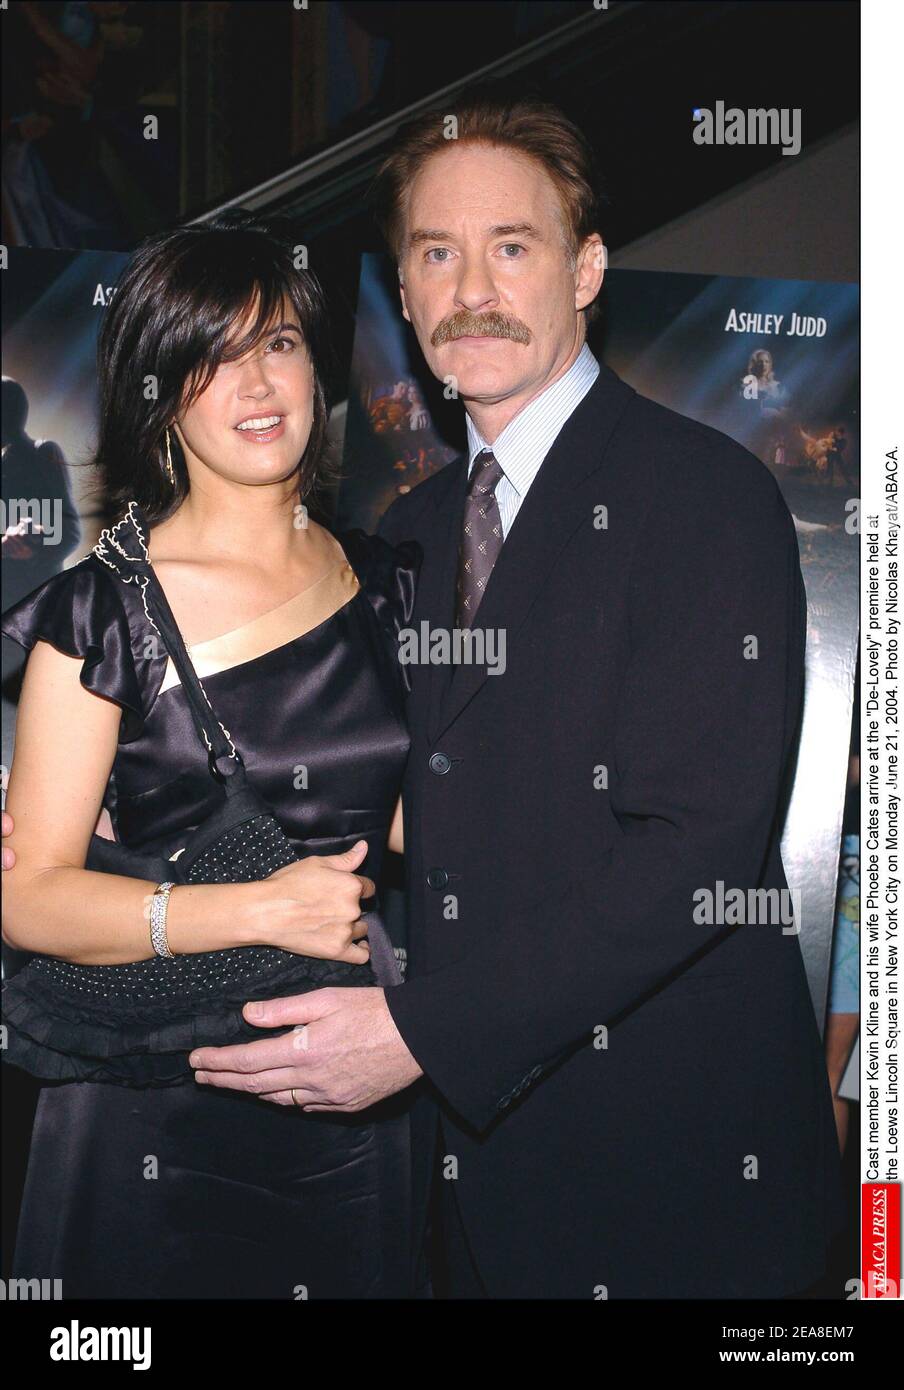 Kevin Kline, membre du casting, et sa femme Phoebe Cates arrivent à la première -de-Lovely- qui a eu lieu au Loews Lincoln Square à New York le lundi 21 juin 2004. Photo de Nicolas Khayat/ABACA. Banque D'Images